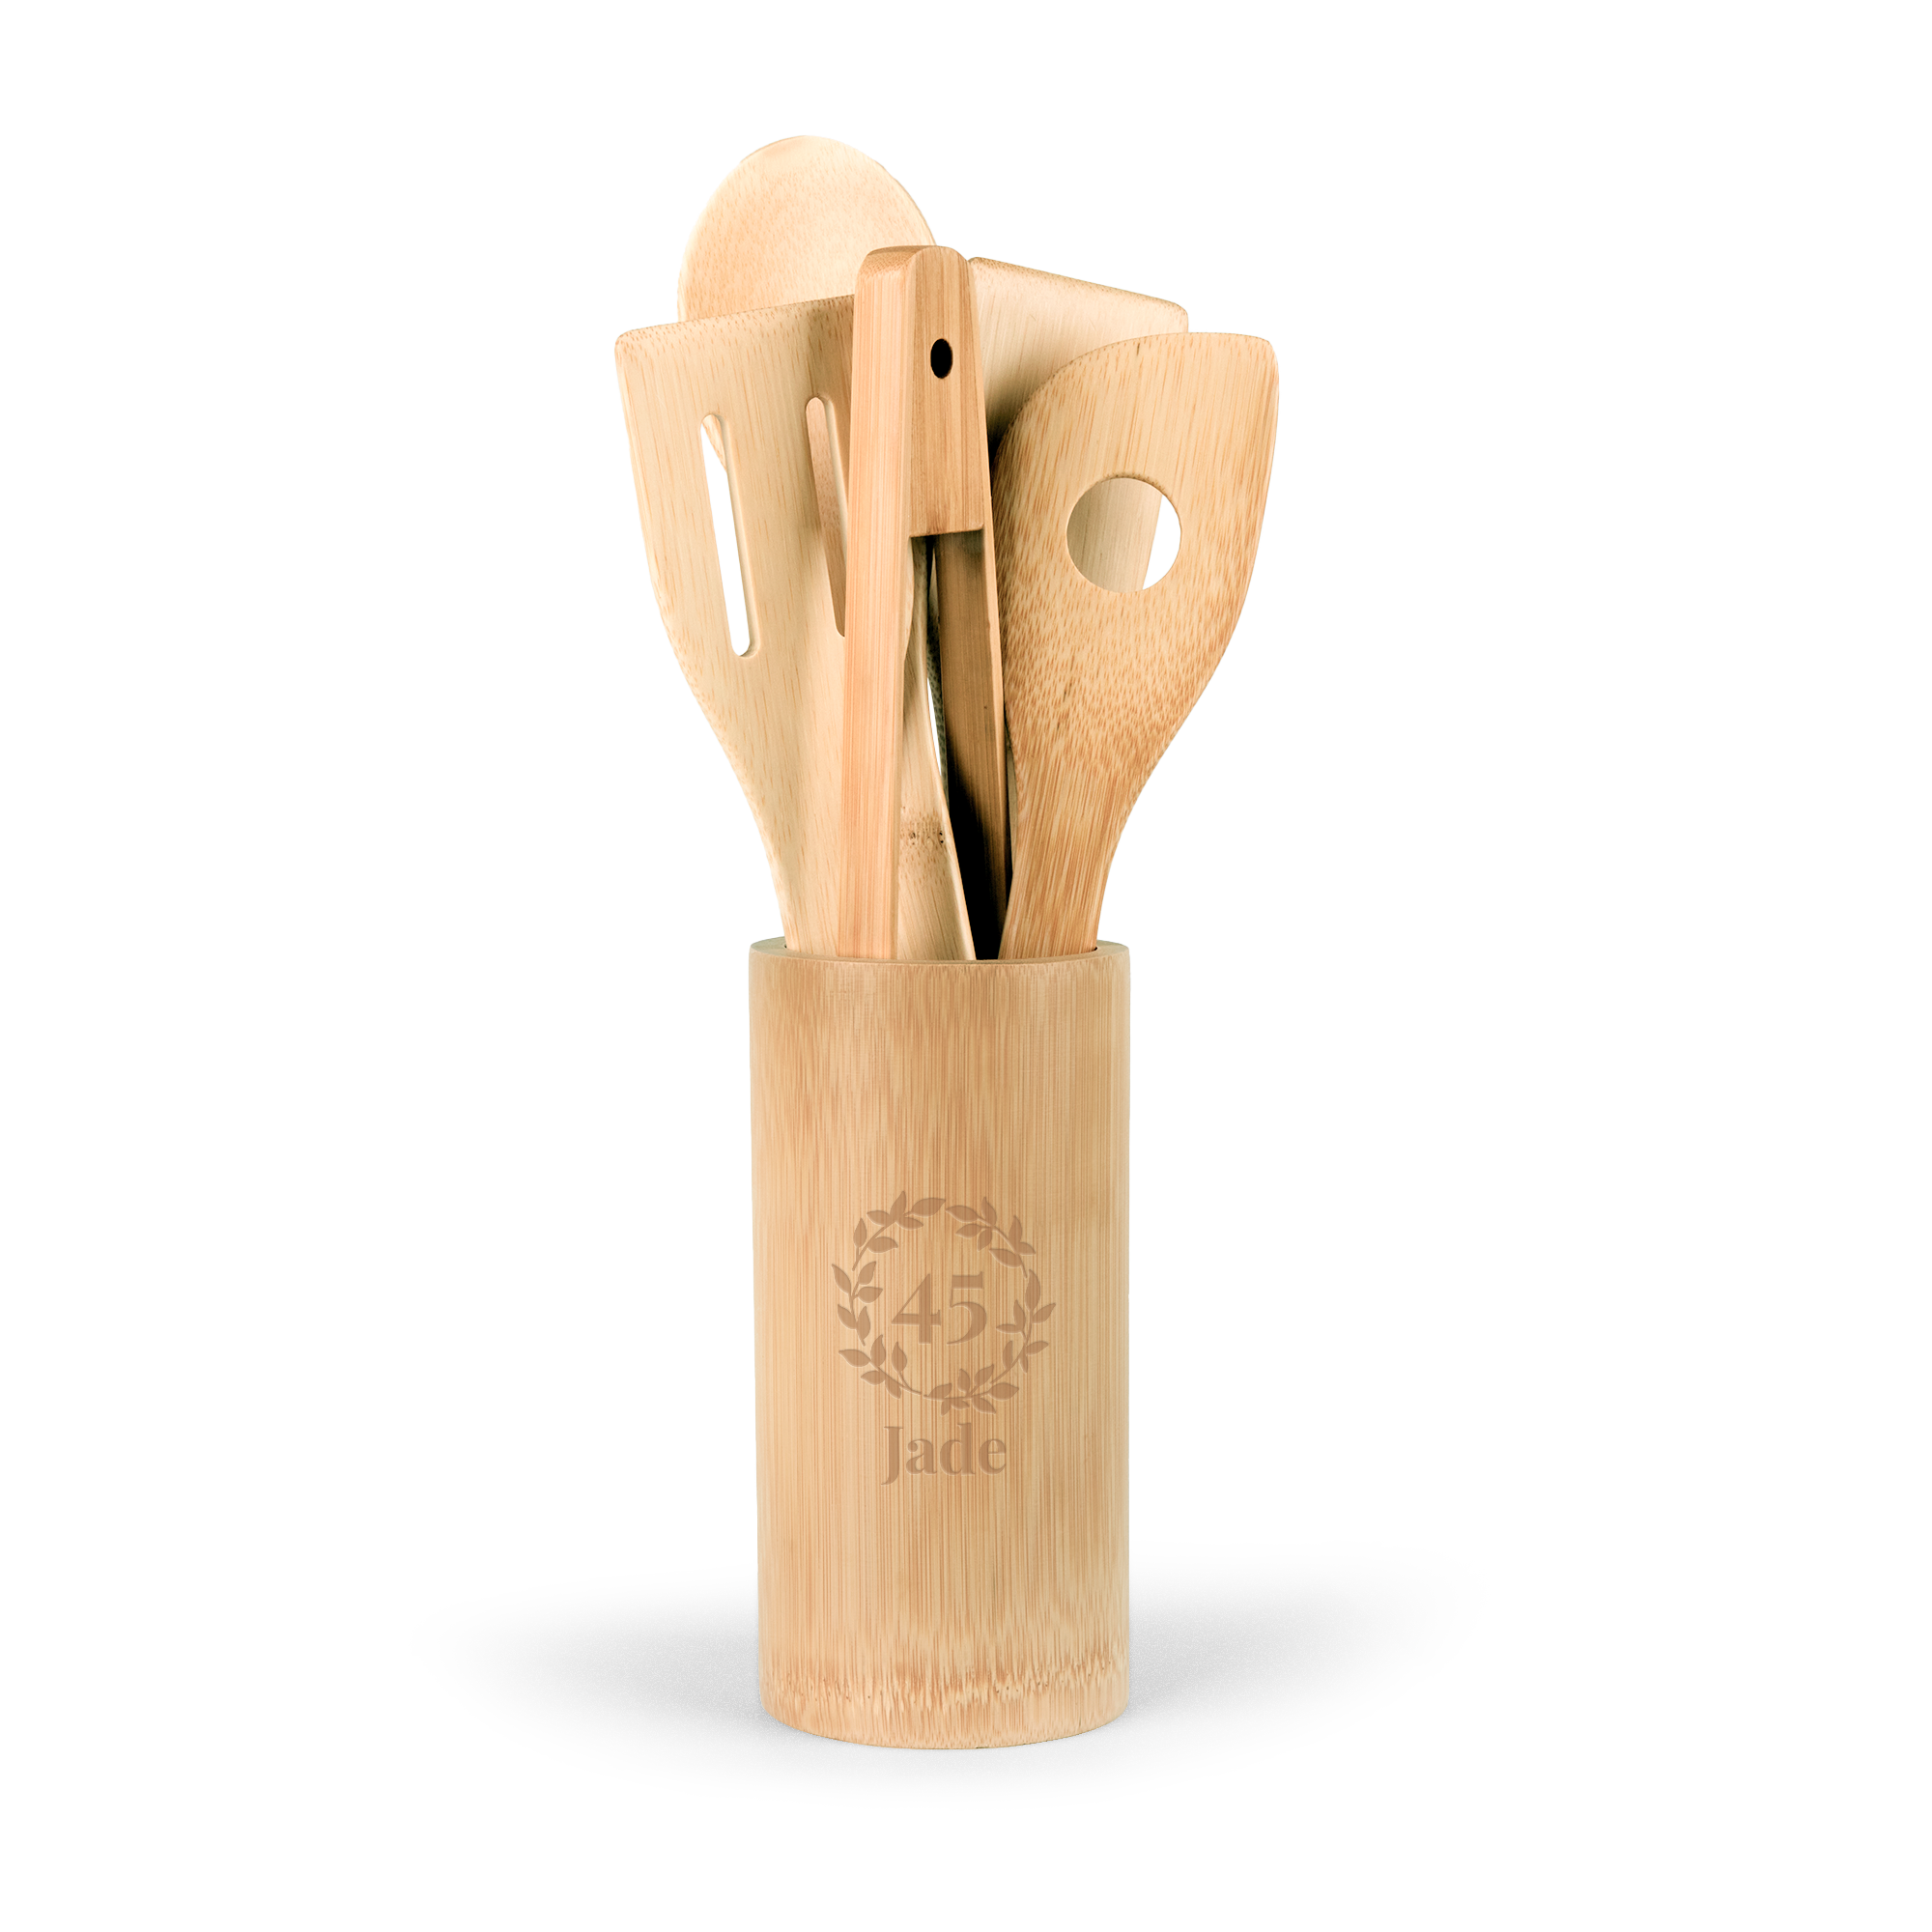 Personalised bamboo kitchen utensils